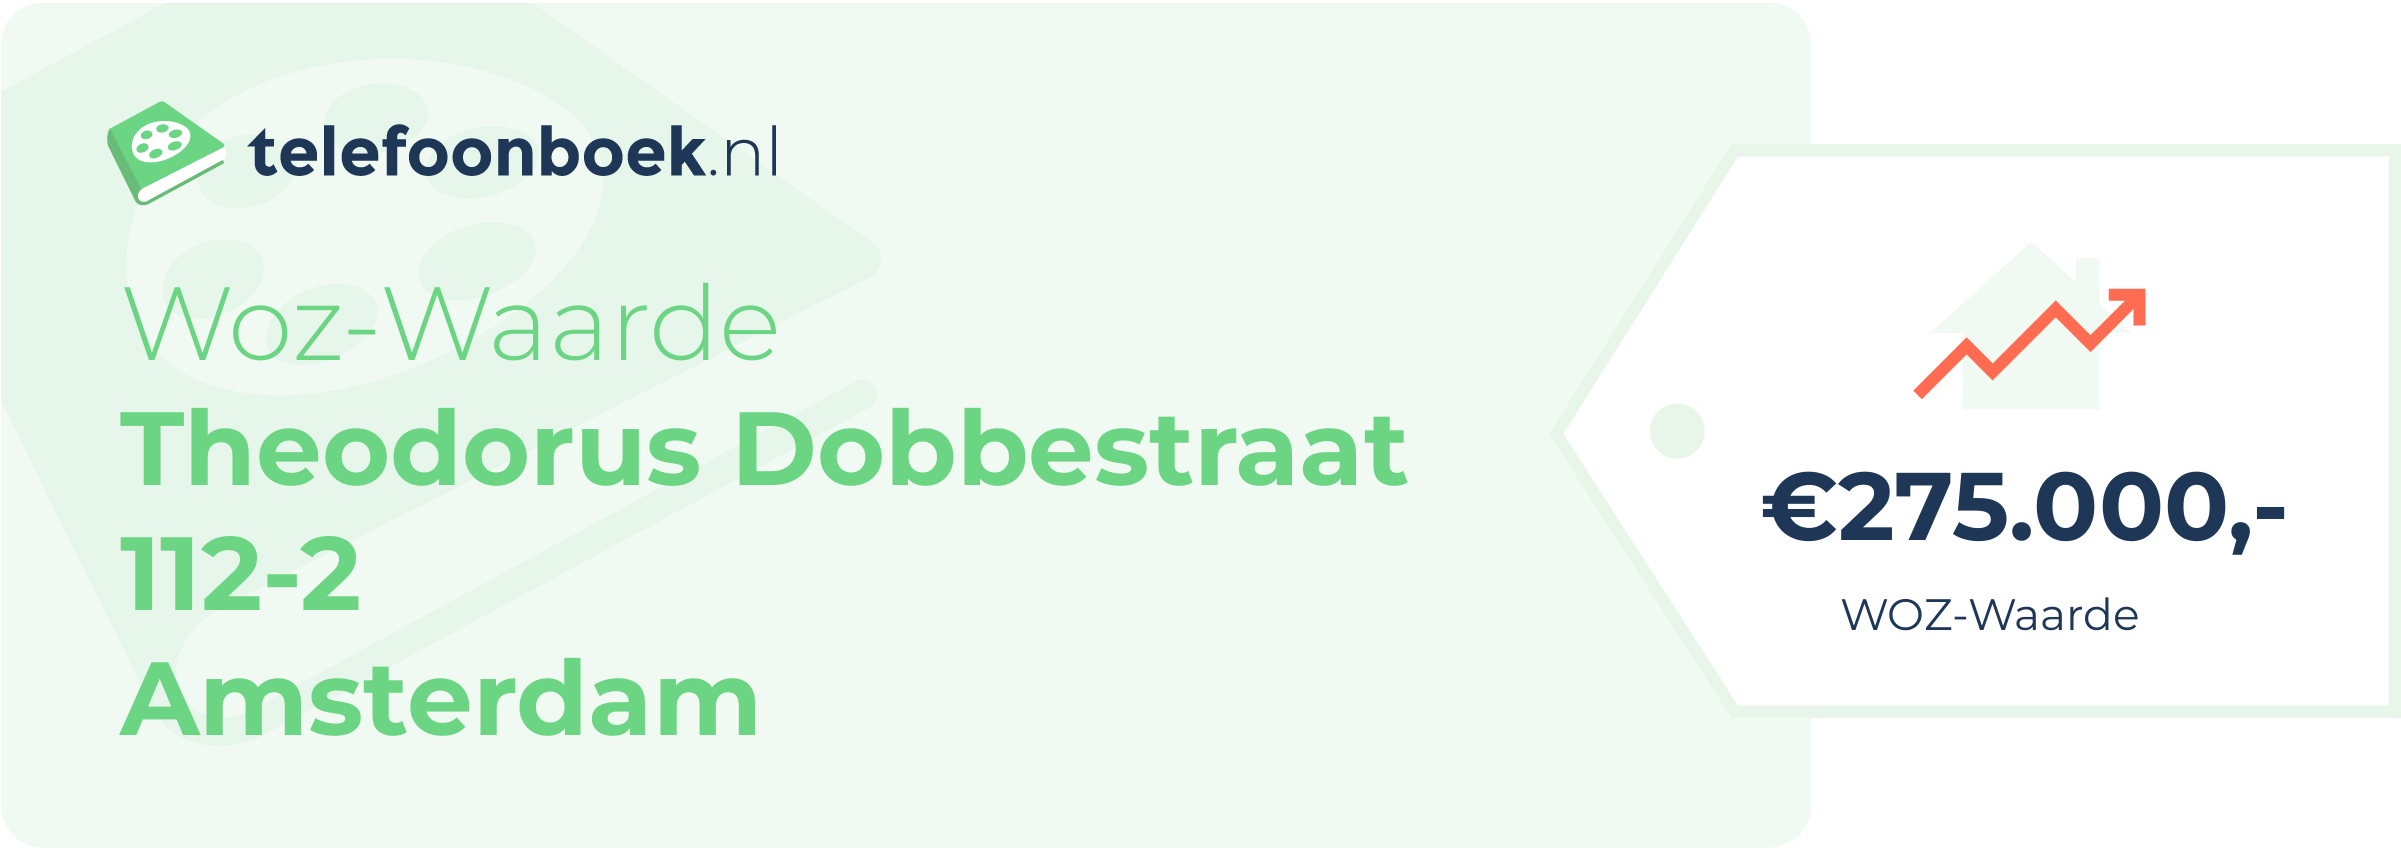 WOZ-waarde Theodorus Dobbestraat 112-2 Amsterdam